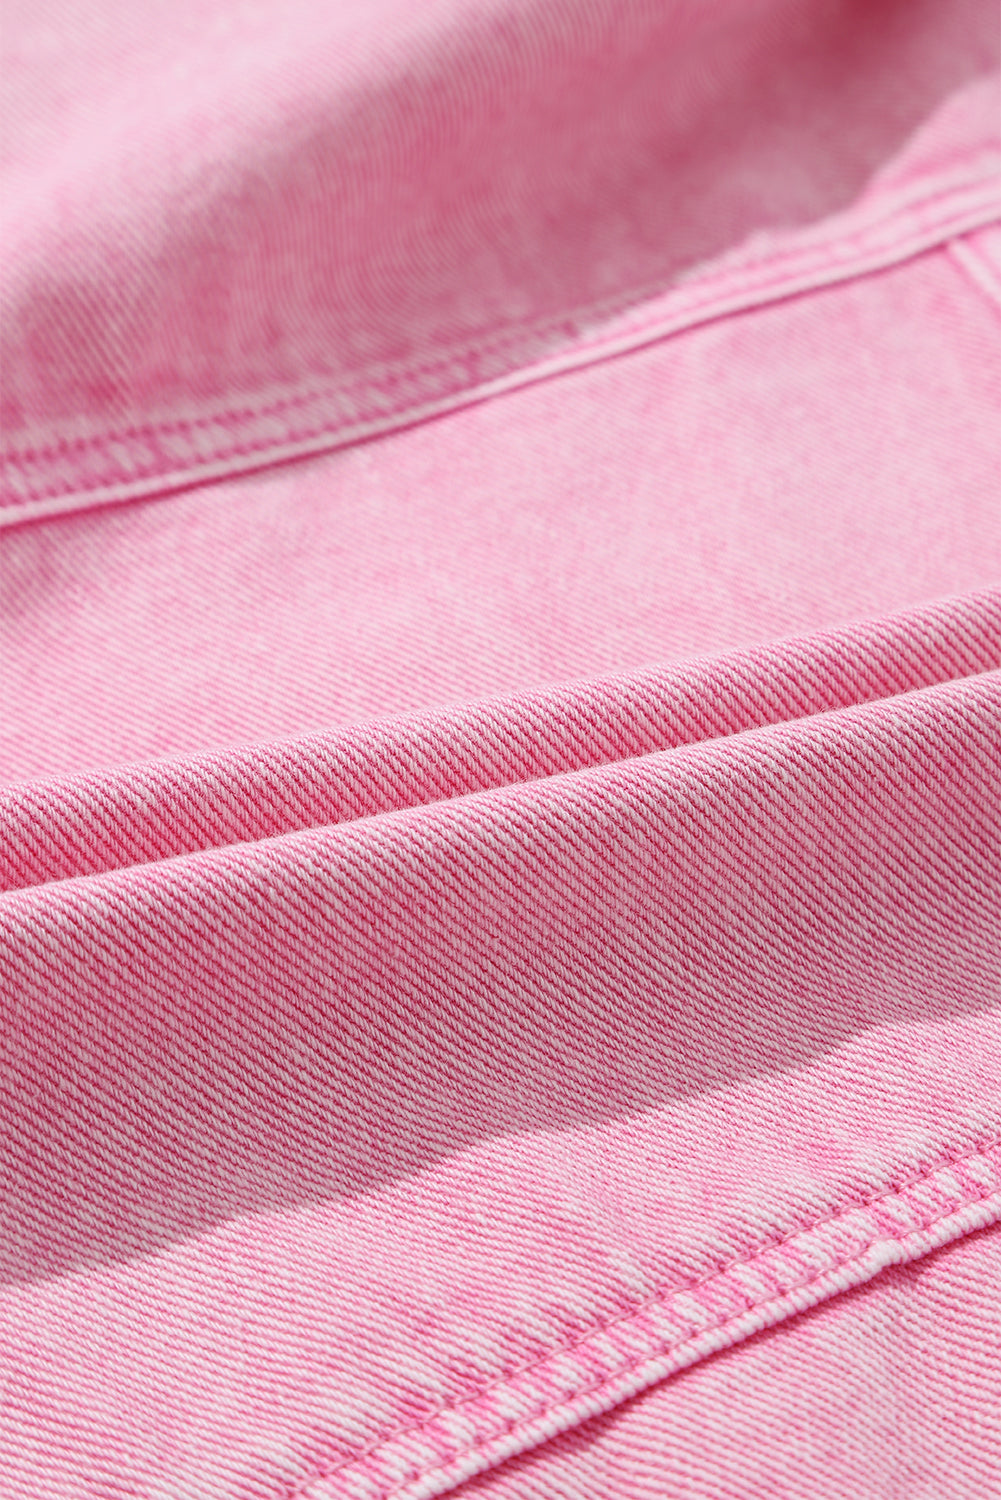 Veste en jean rose à poches cloutées et rivets